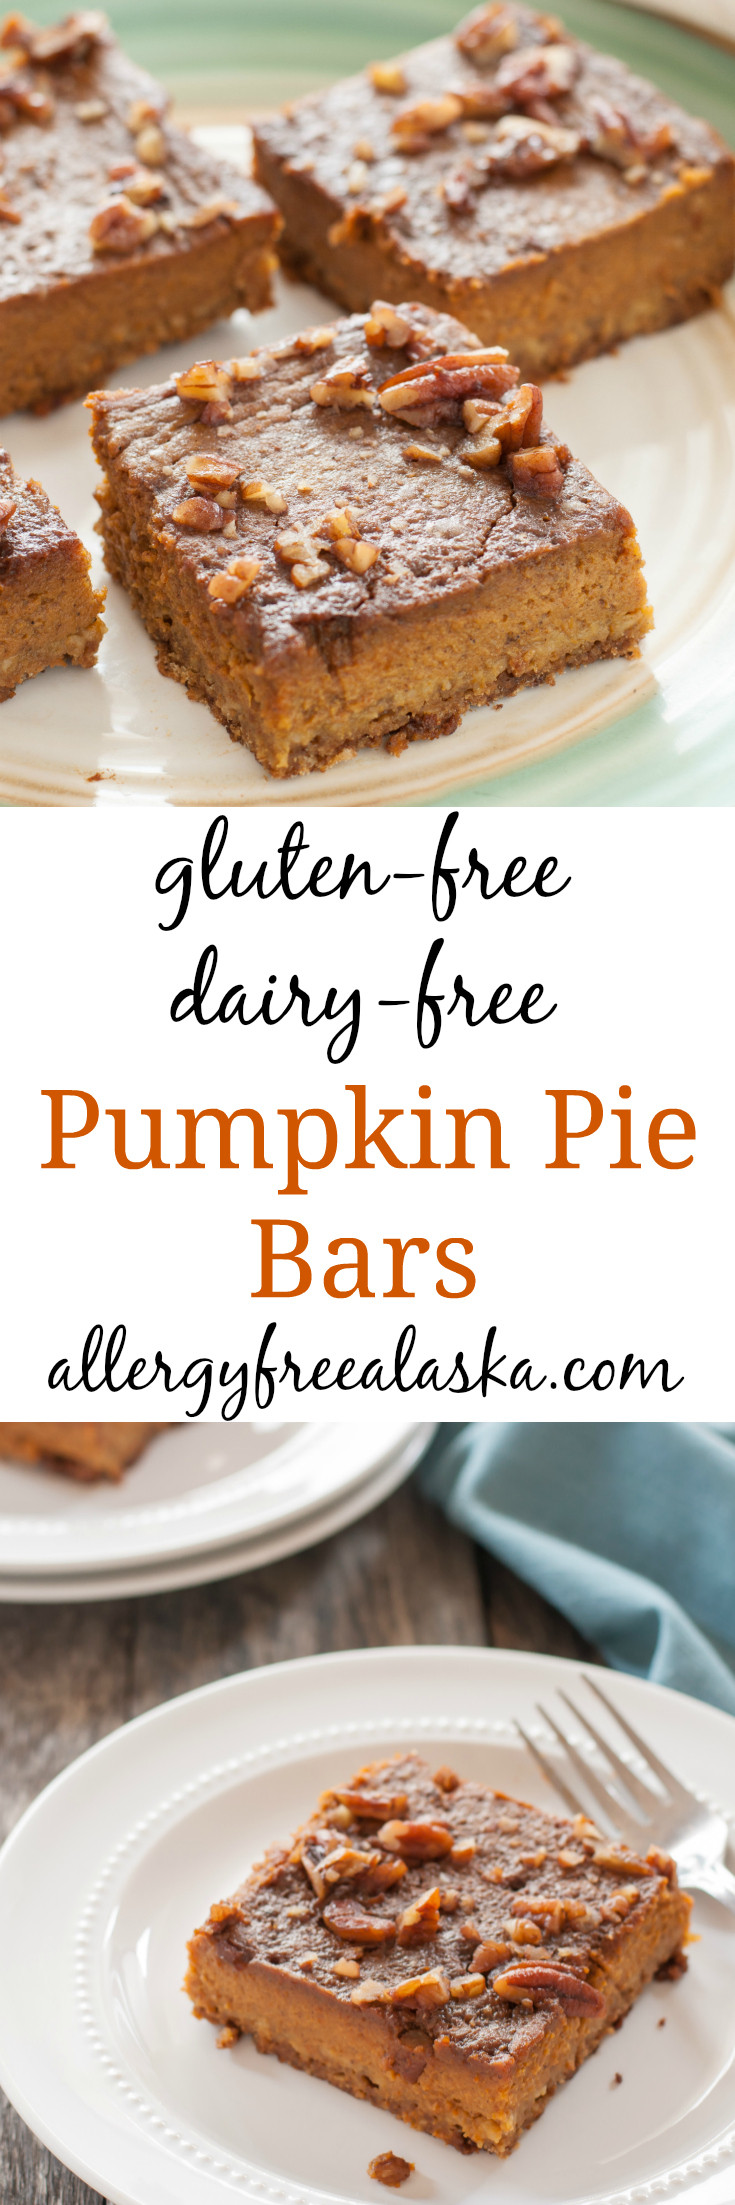 Libby'S Dairy Free Pumpkin Pie
 gluten free dairy free pumpkin pie bar recipe from allergy